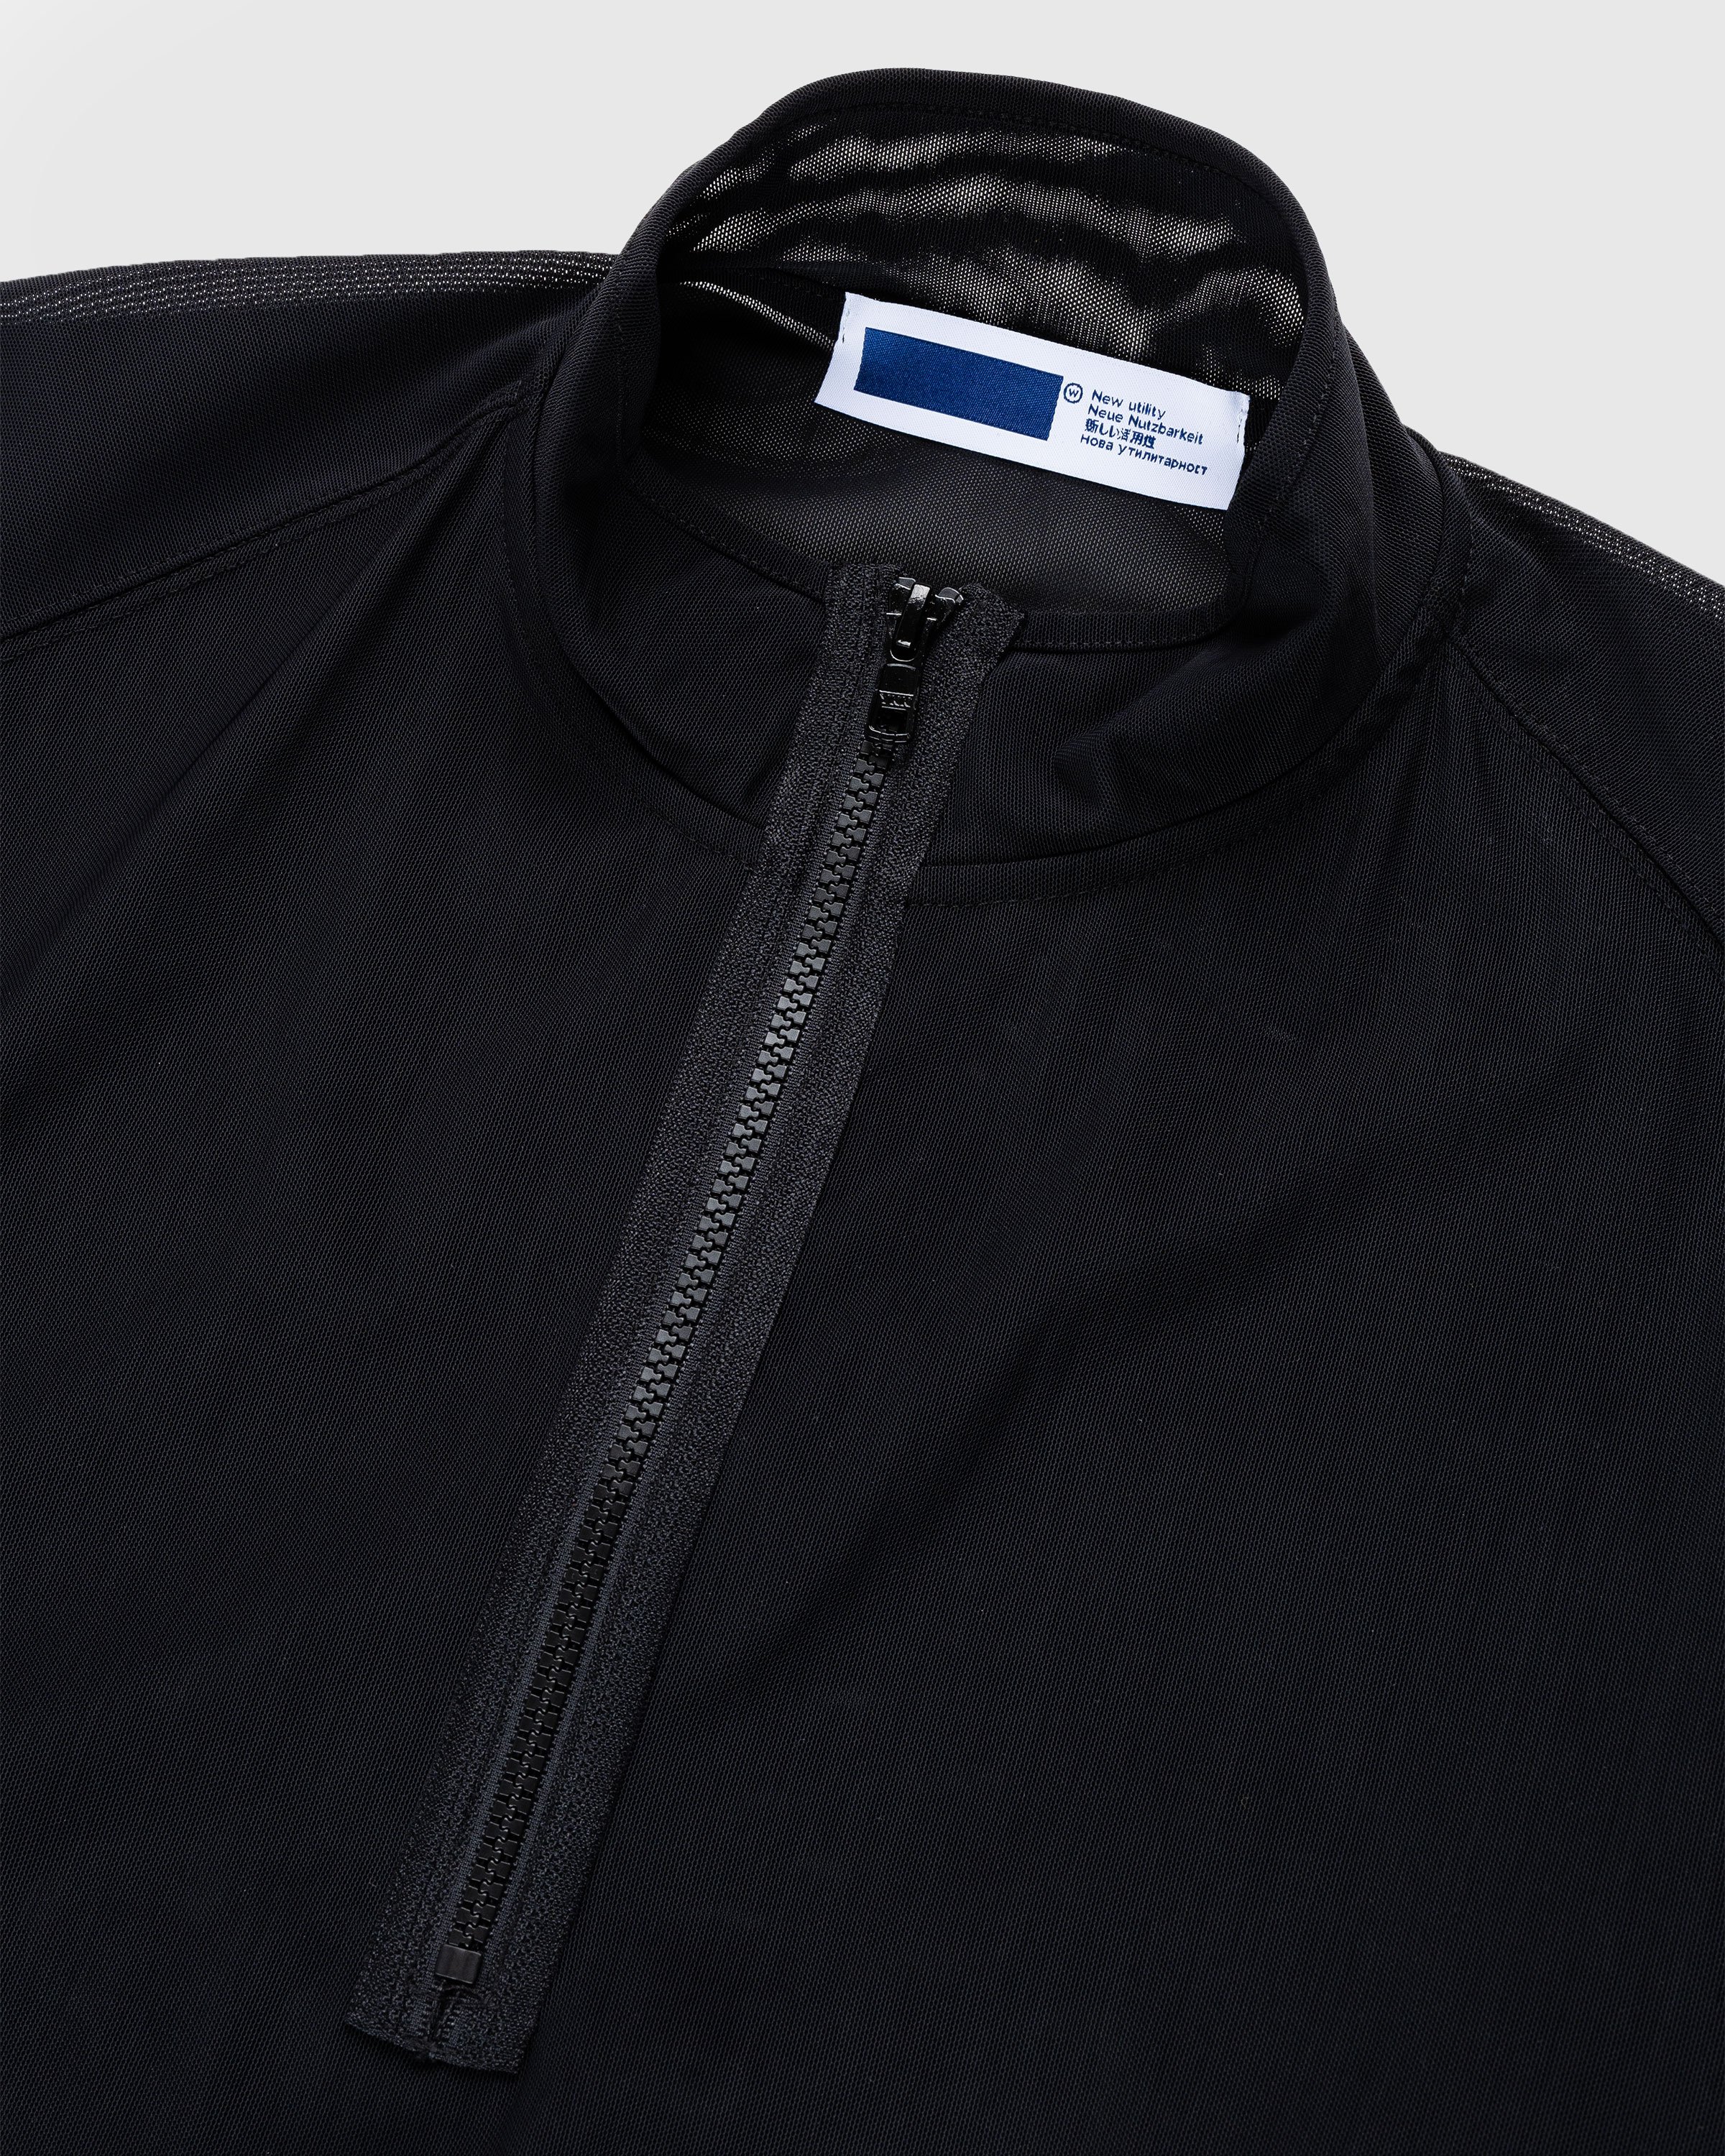 AFFXWRKS - Transit Mesh Pullover Black - Clothing - Black - Image 6